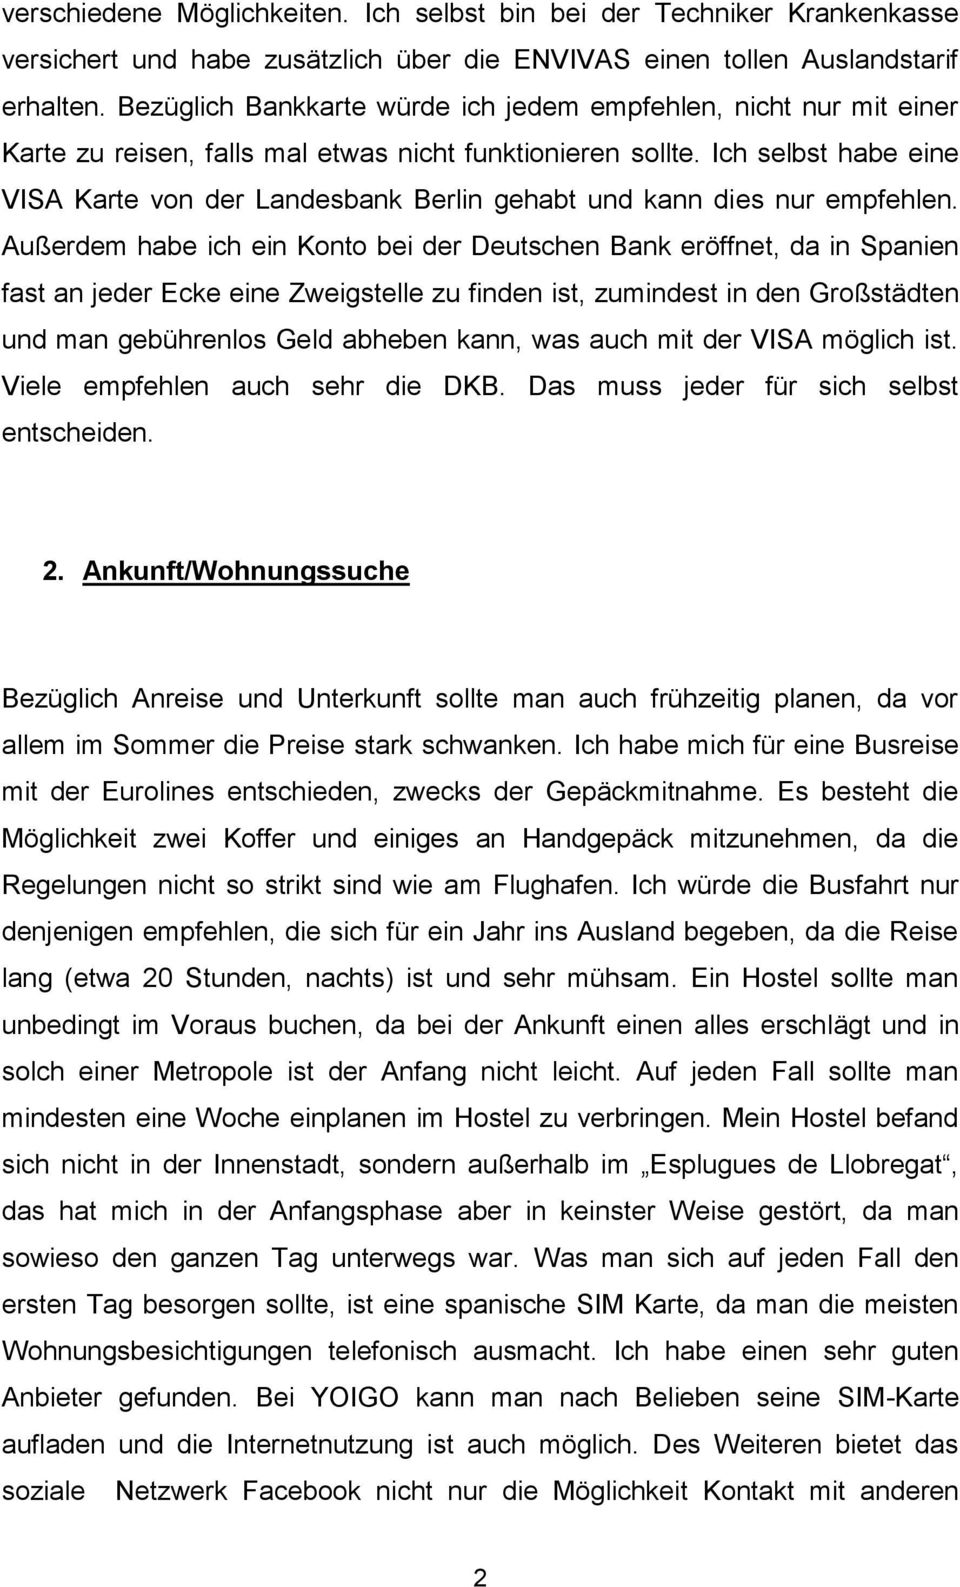 Ich selbst habe eine VISA Karte von der Landesbank Berlin gehabt und kann dies nur empfehlen.